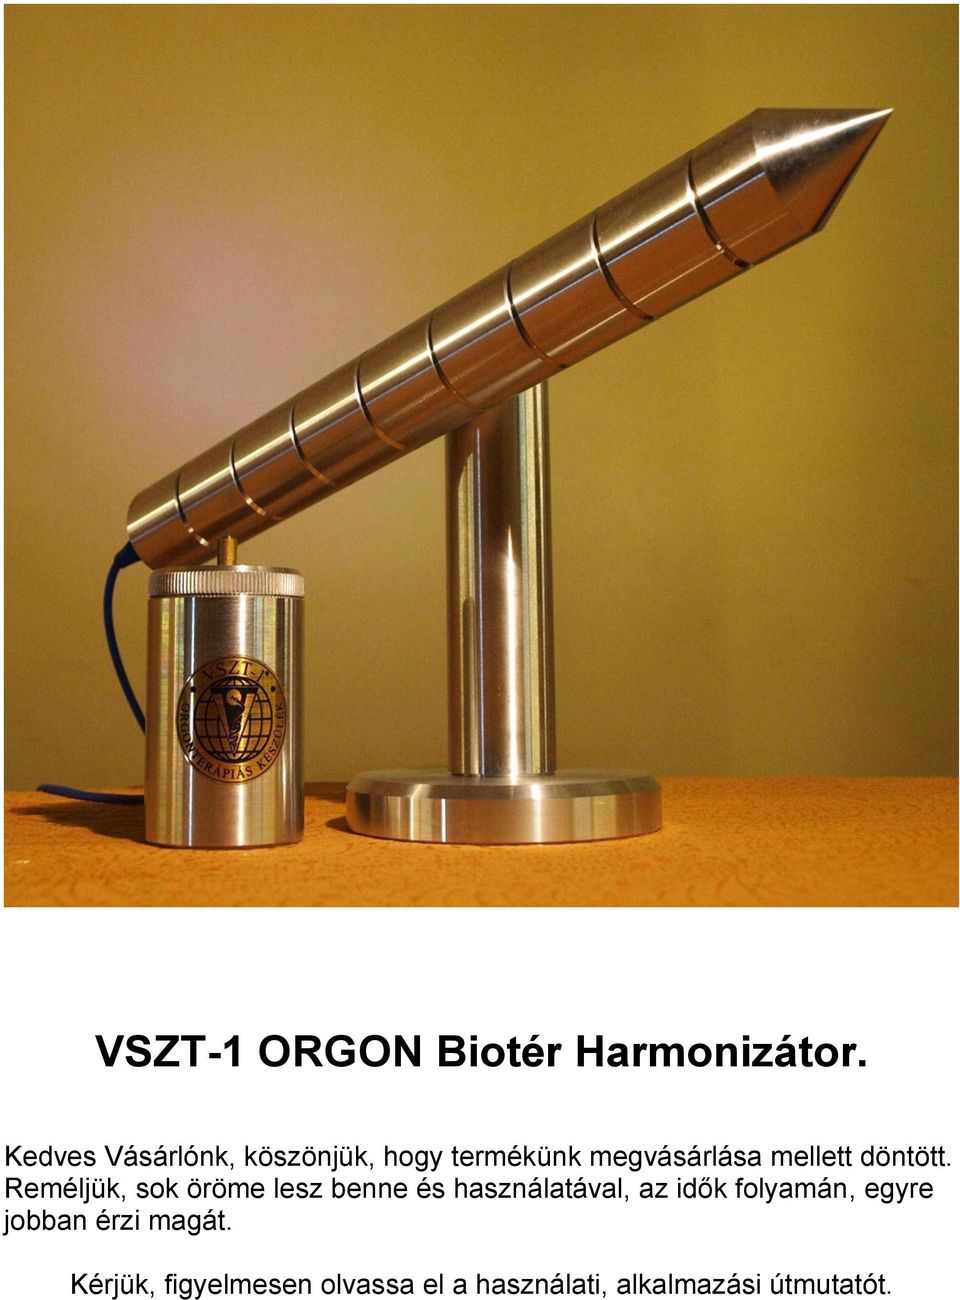 VSZT-1 ORGON Biotér Harmonizátor. - PDF Ingyenes letöltés